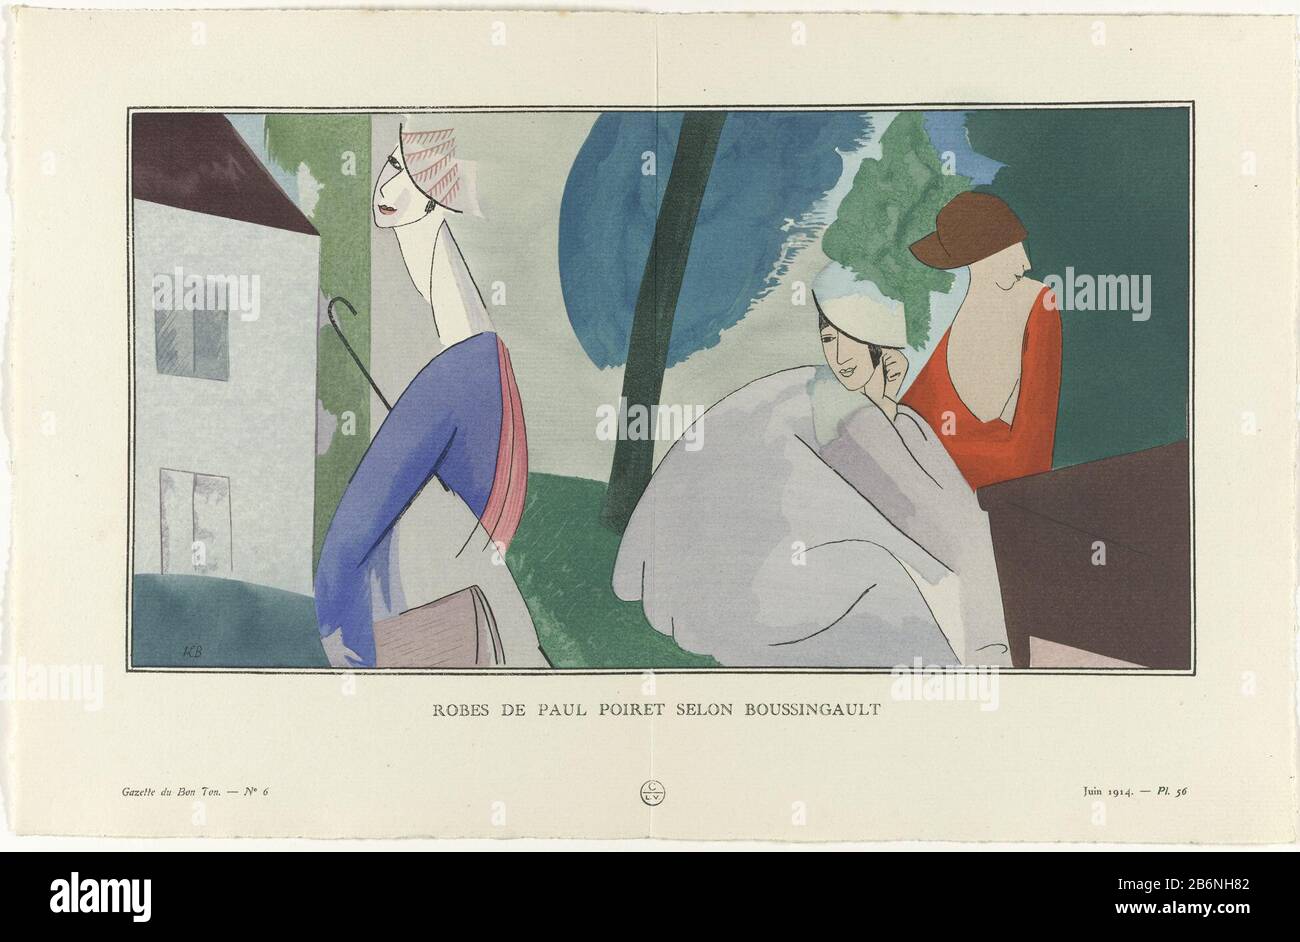 Gazette du Bon Ton, 1914 - No 6, Pl 56 Robes de Paul Poiret selon  Boussingault (titel op object) Three women dressed in gowns by Paul Poiret.  The print is designed by